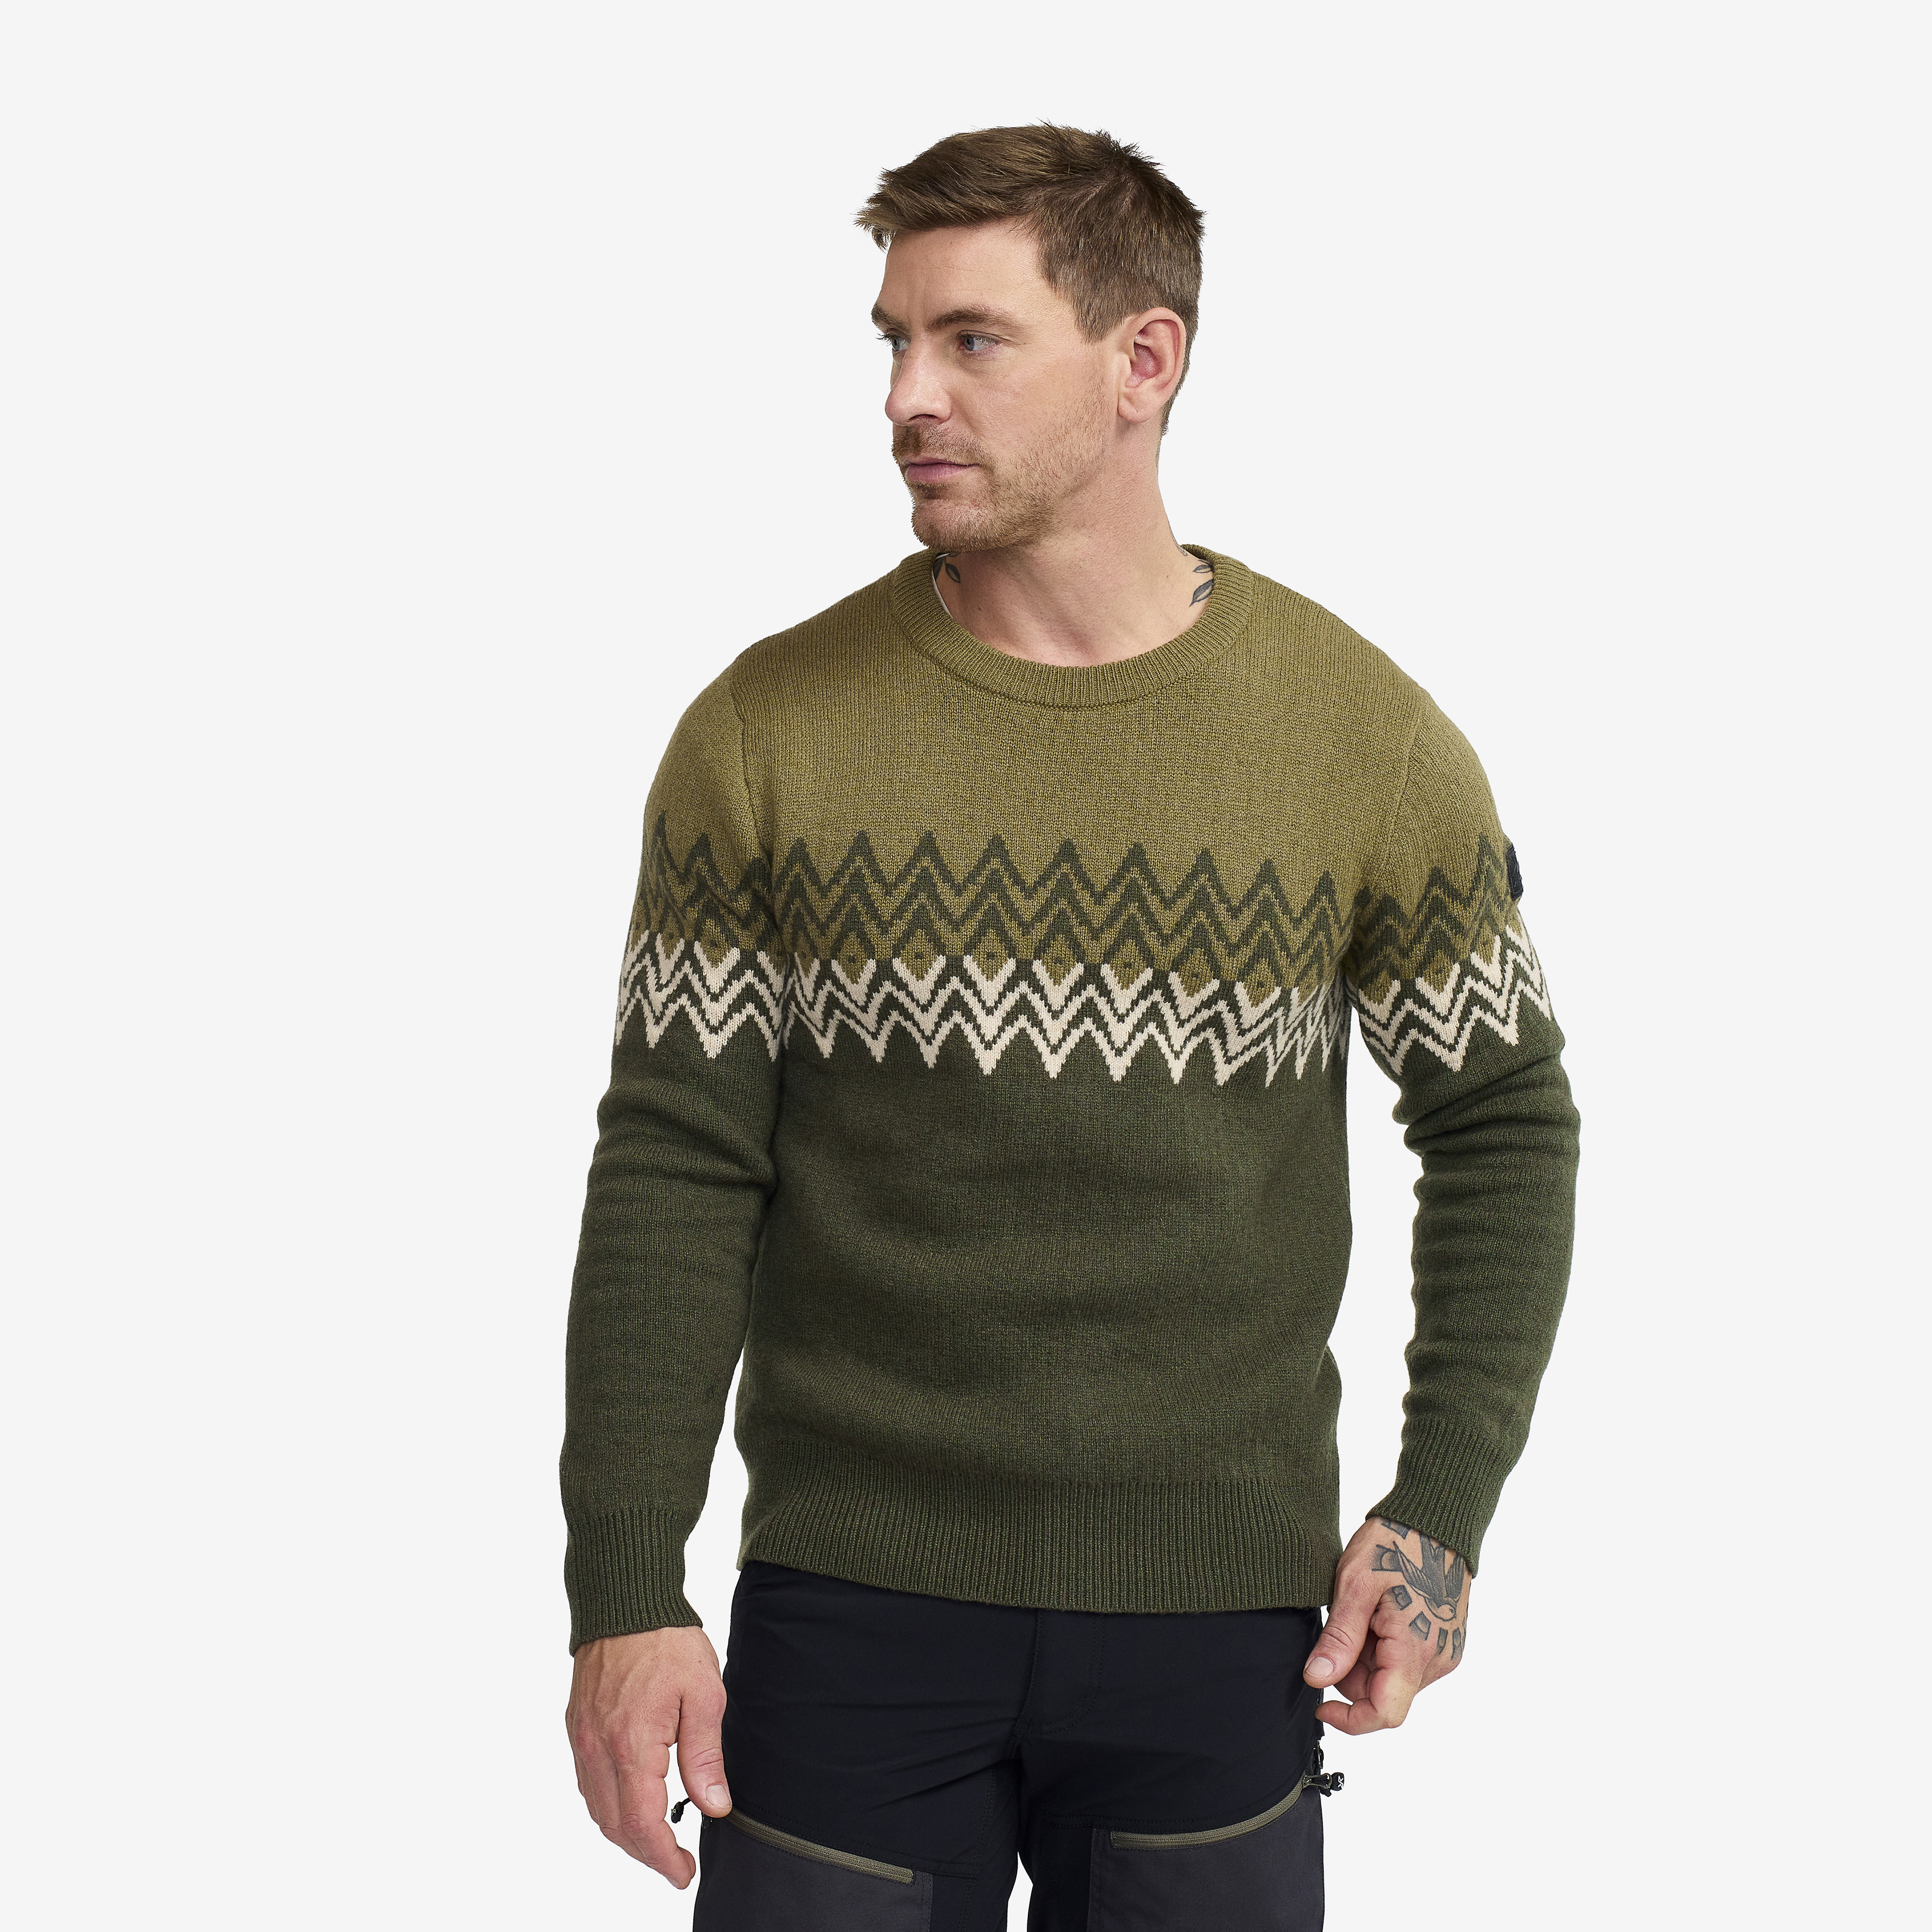 Heavy Knit Sweater - Herr - Forest Night, Storlek:XL - Herr > Tröjor > Skjortor & Långärmade Tröjor